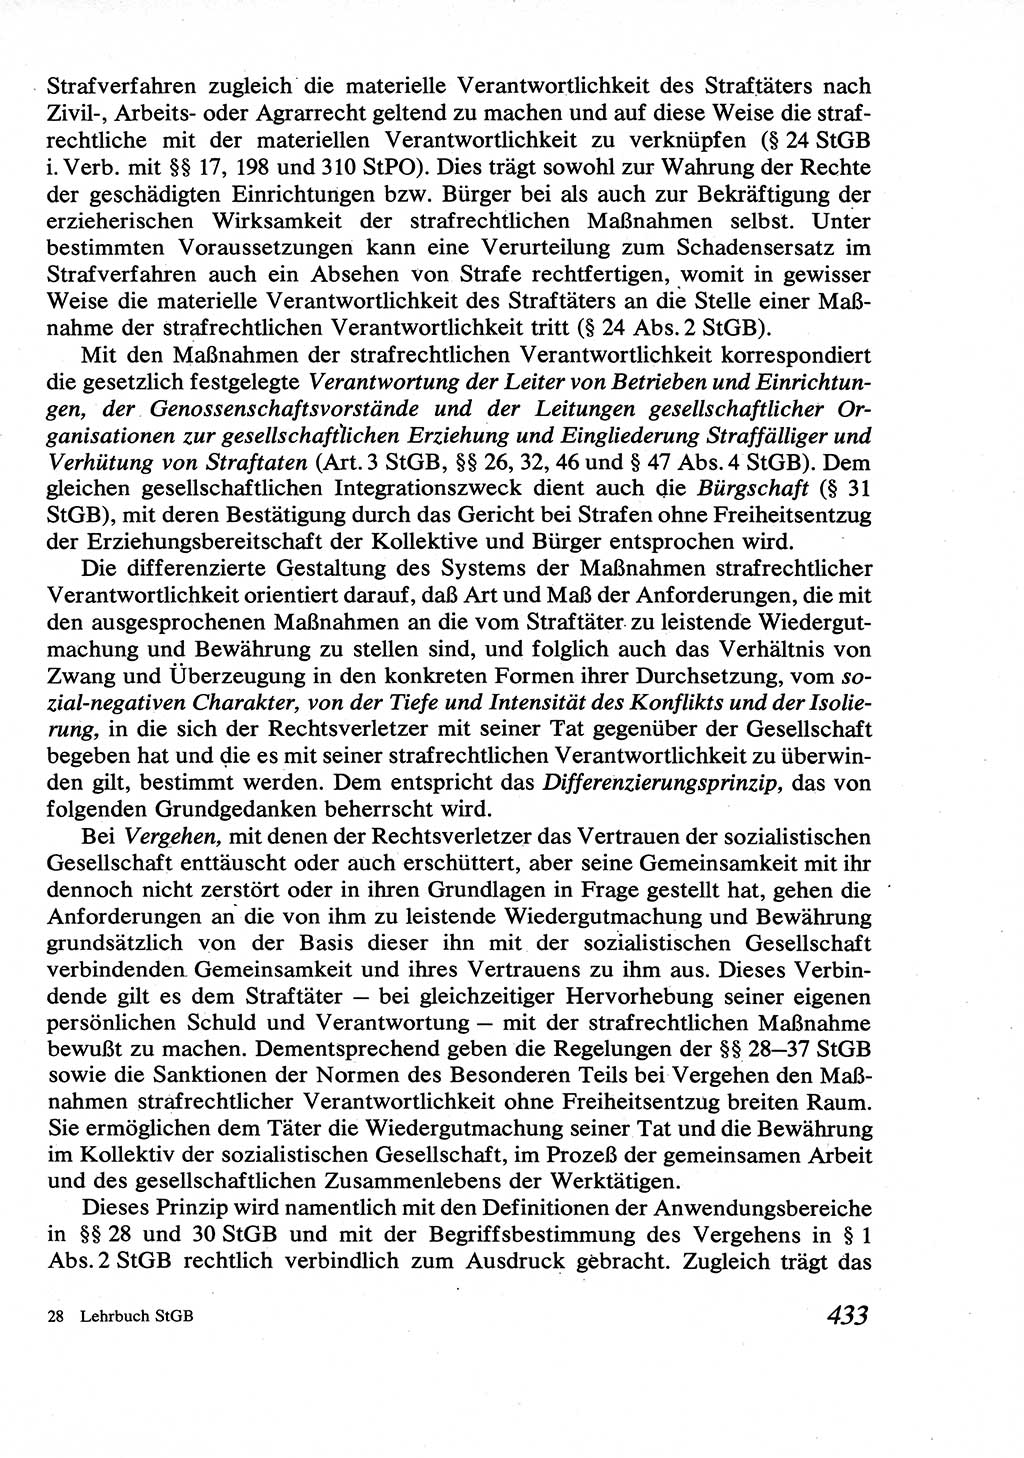 Strafrecht [Deutsche Demokratische Republik (DDR)], Allgemeiner Teil, Lehrbuch 1976, Seite 433 (Strafr. DDR AT Lb. 1976, S. 433)